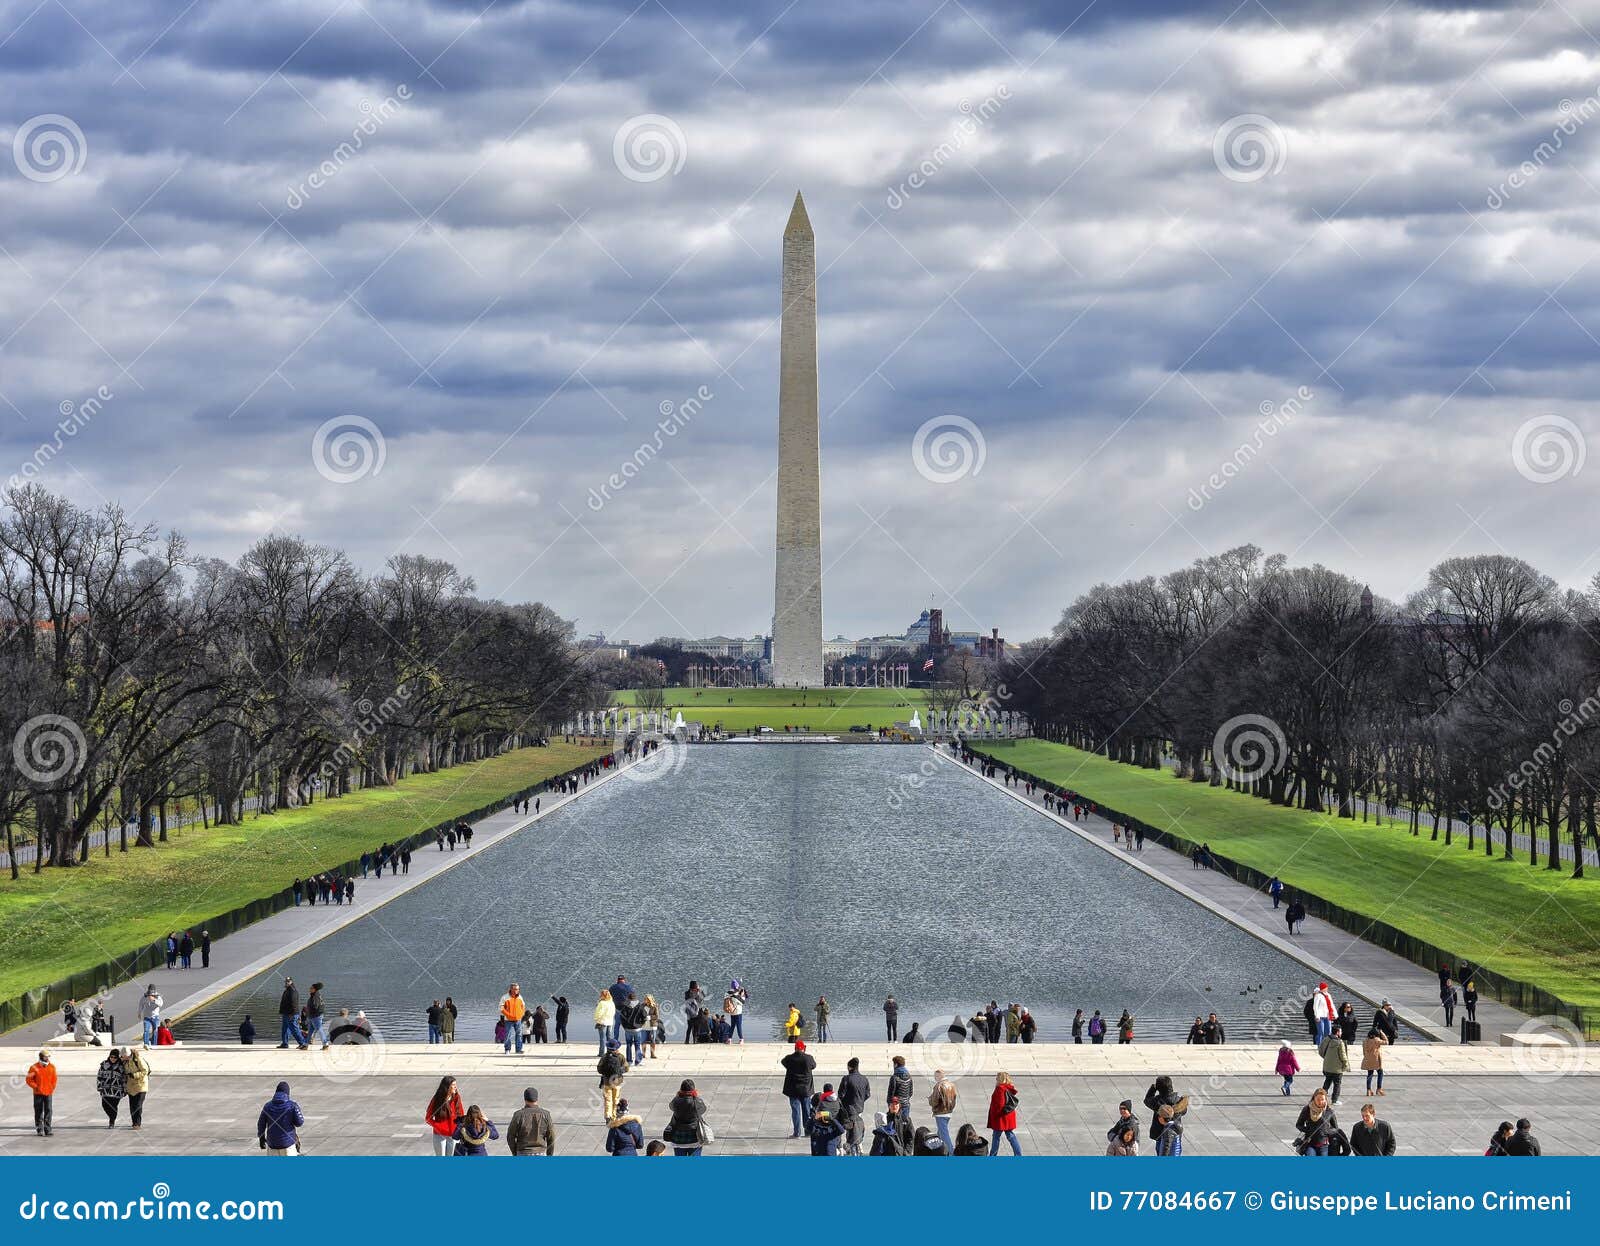 Washington DC Washington Monument American Monuments